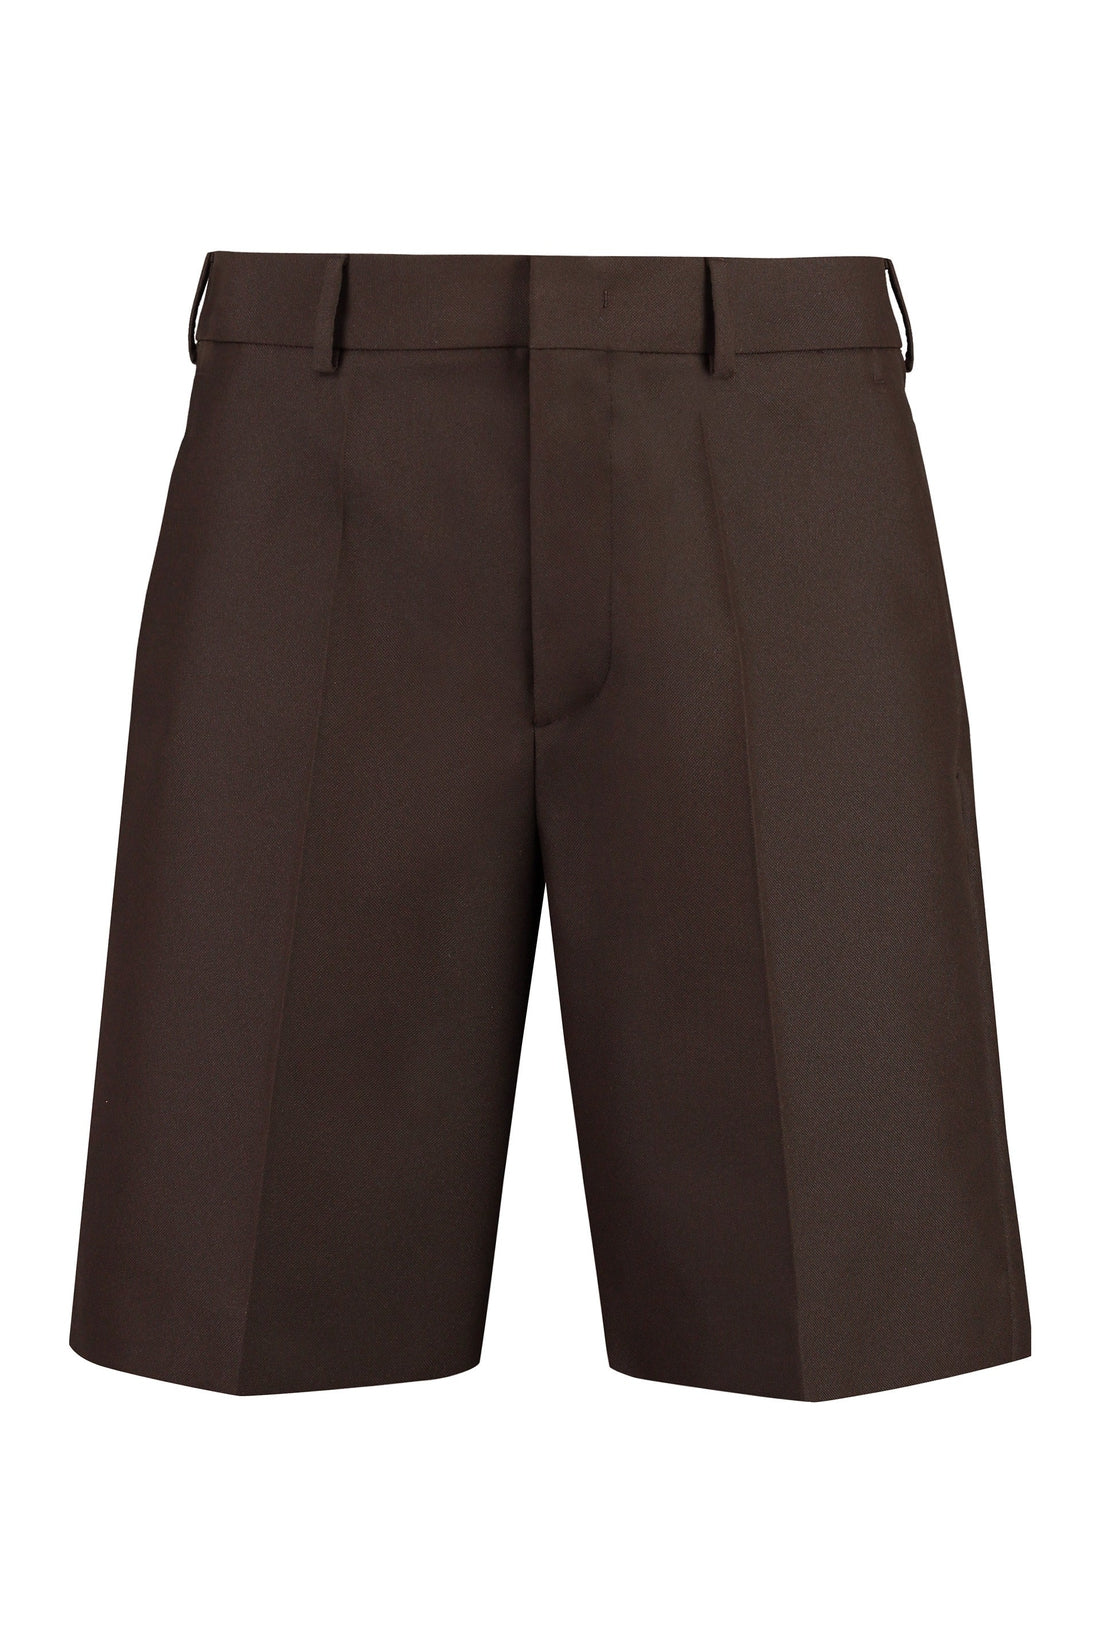 Valentino-OUTLET-SALE-Techno fabric bermuda-shorts-ARCHIVIST